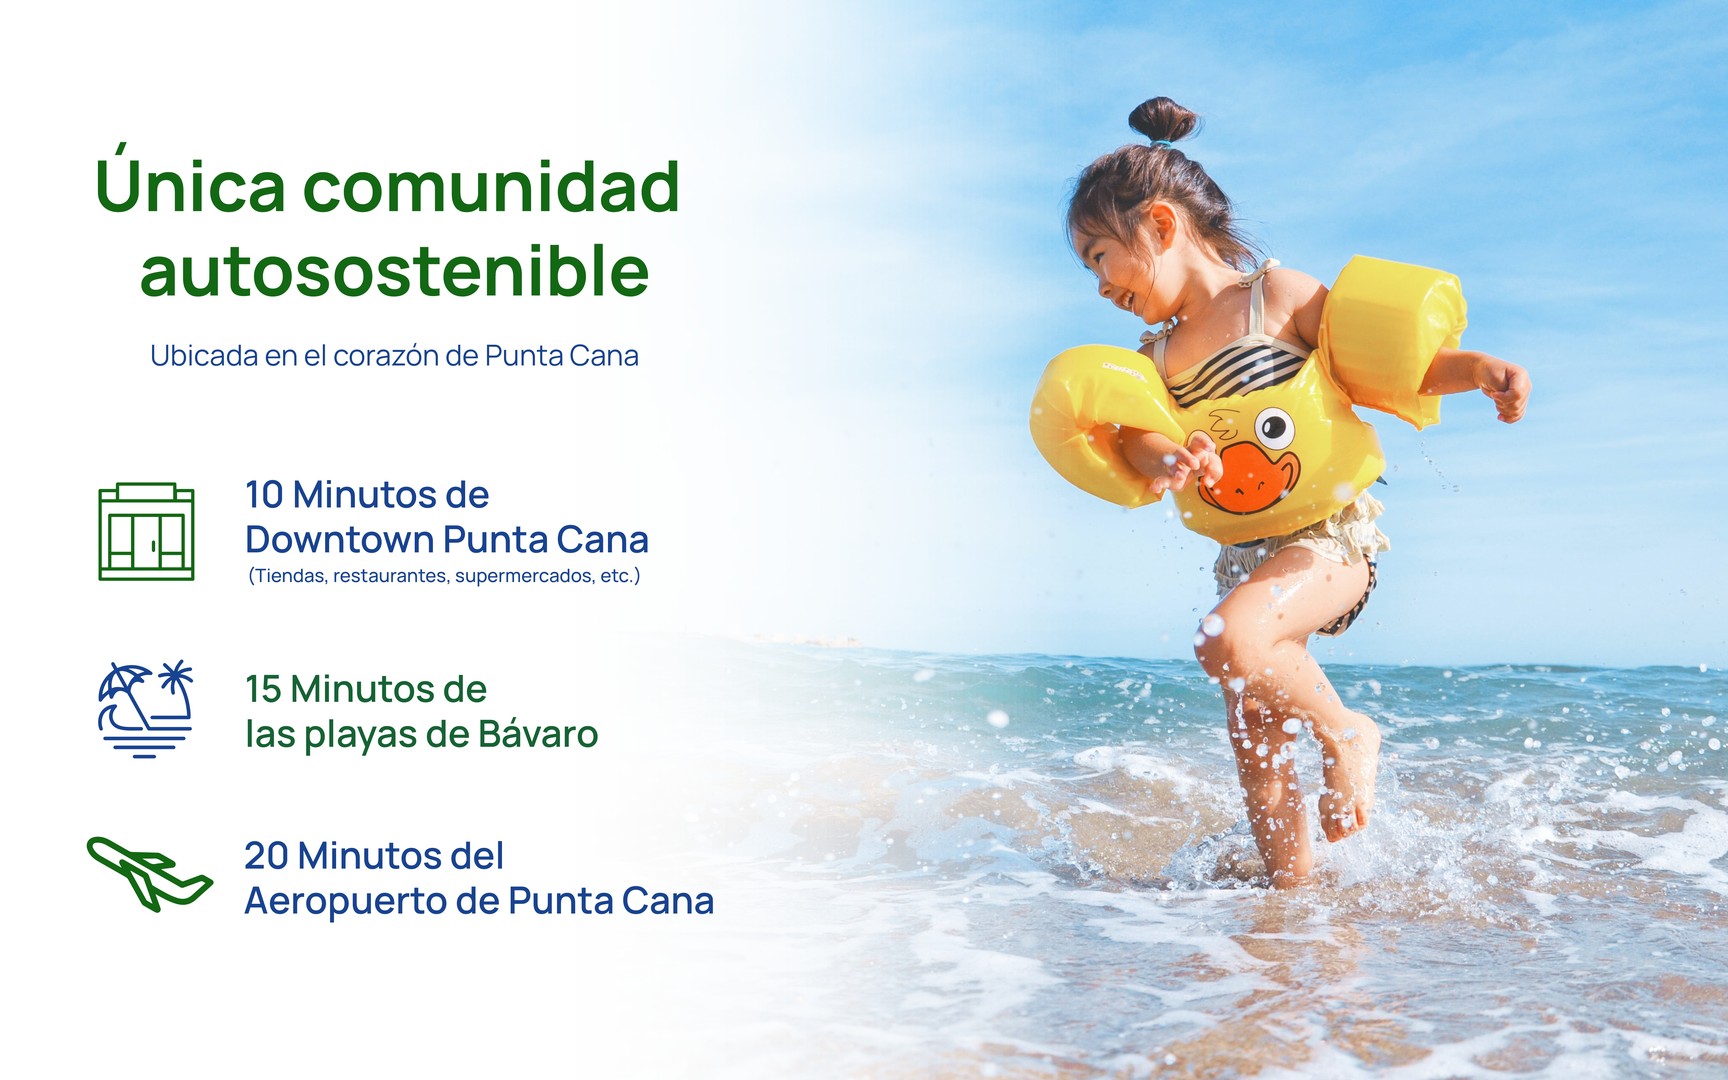 casas vacacionales y villas - Punta Cana, Proyecto de 190 casas totalmente eco-amigables. 2 y 3 hab. Junio/Dic 2